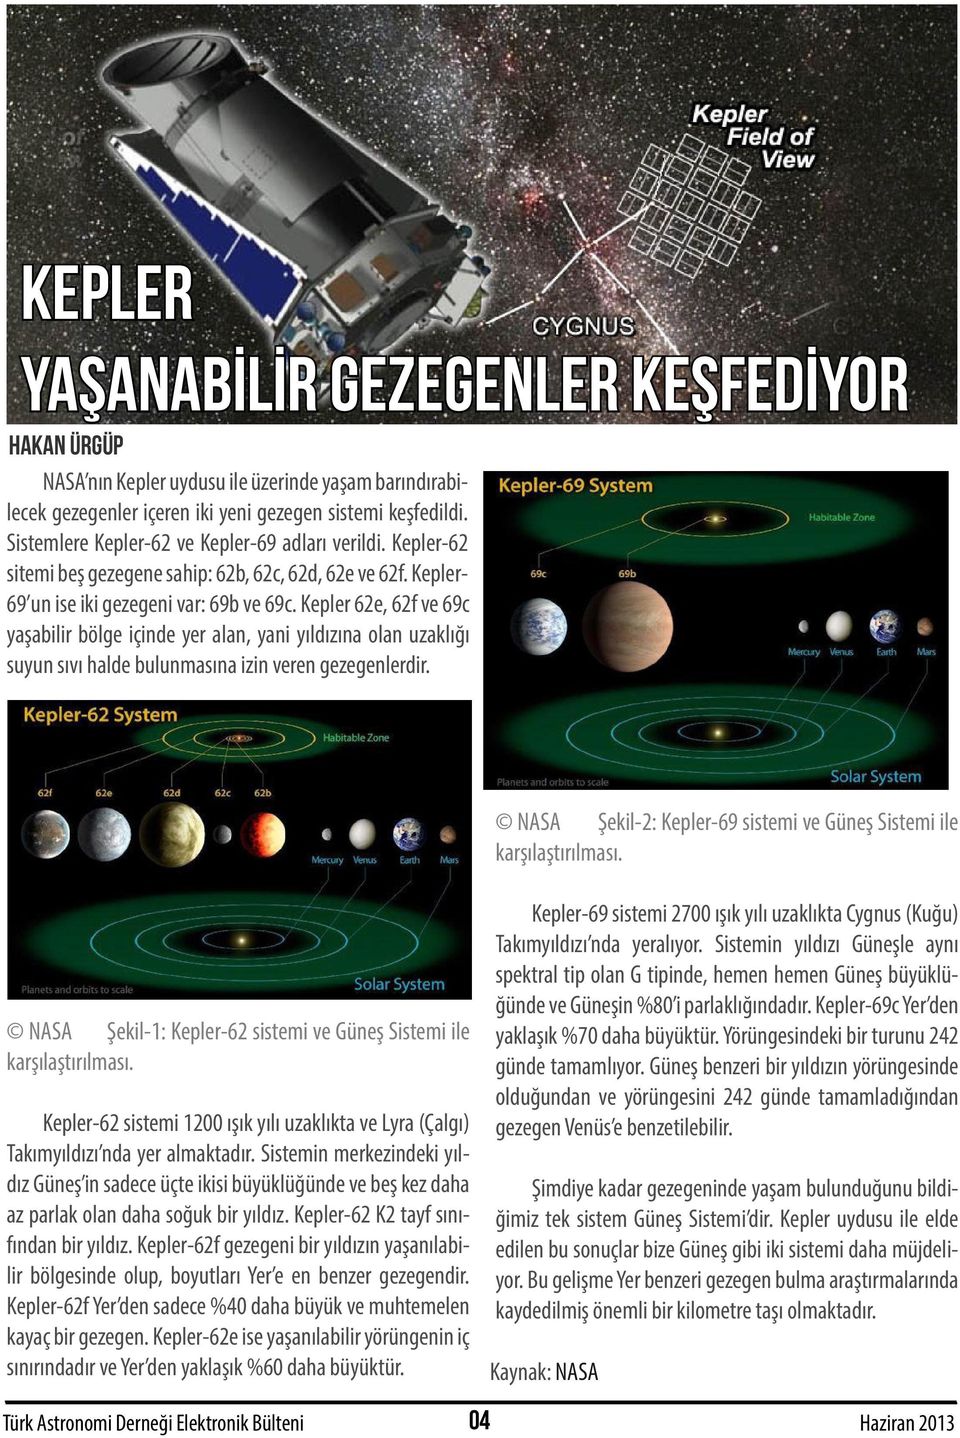 Kepler 62e, 62f ve 69c yaşabilir bölge içinde yer alan, yani yıldızına olan uzaklığı suyun sıvı halde bulunmasına izin veren gezegenlerdir.